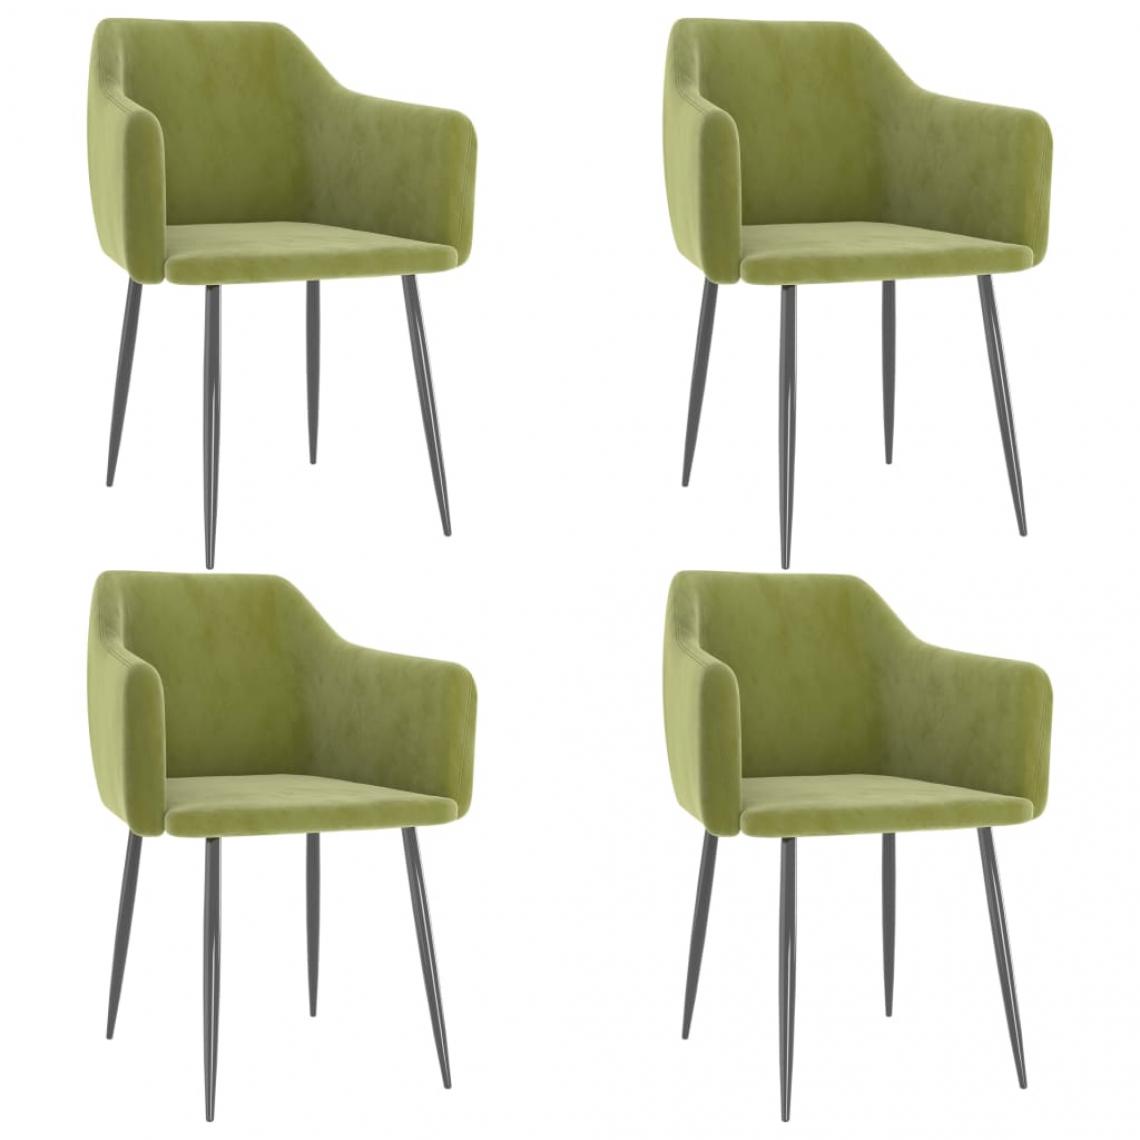 Decoshop26 - Lot de 4 chaises de salle à manger cuisine design moderne velours vert clair CDS022020 - Chaises